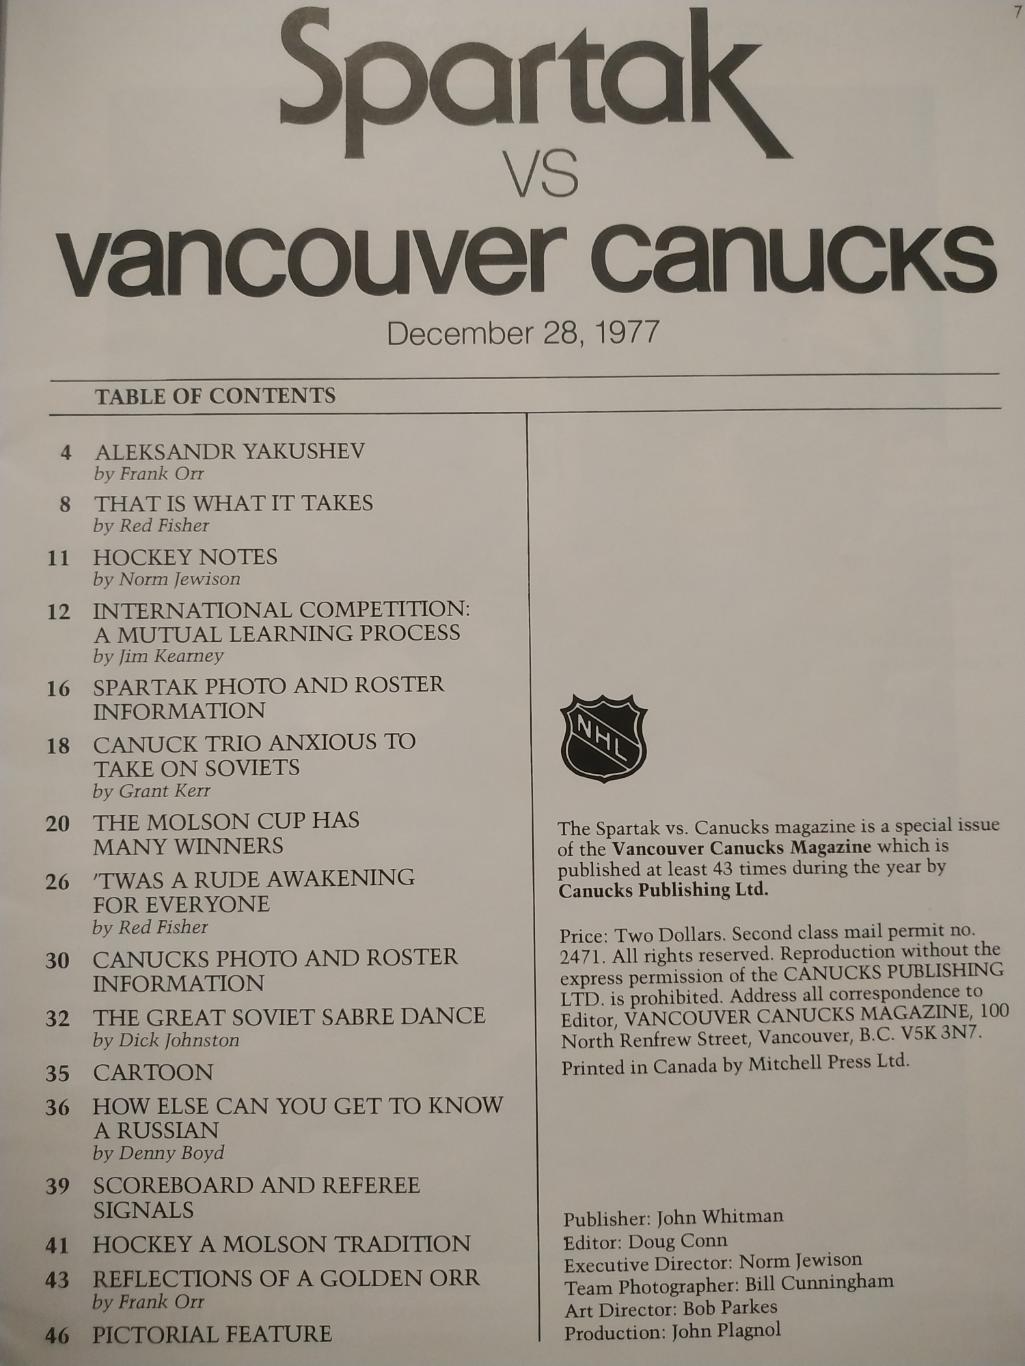 ПРОГРАММА МАТЧА НХЛ СПАРТАК - ВАНКУВЕР 28.12.1977 NHL SPARTAK VS. VANCOUVER 1